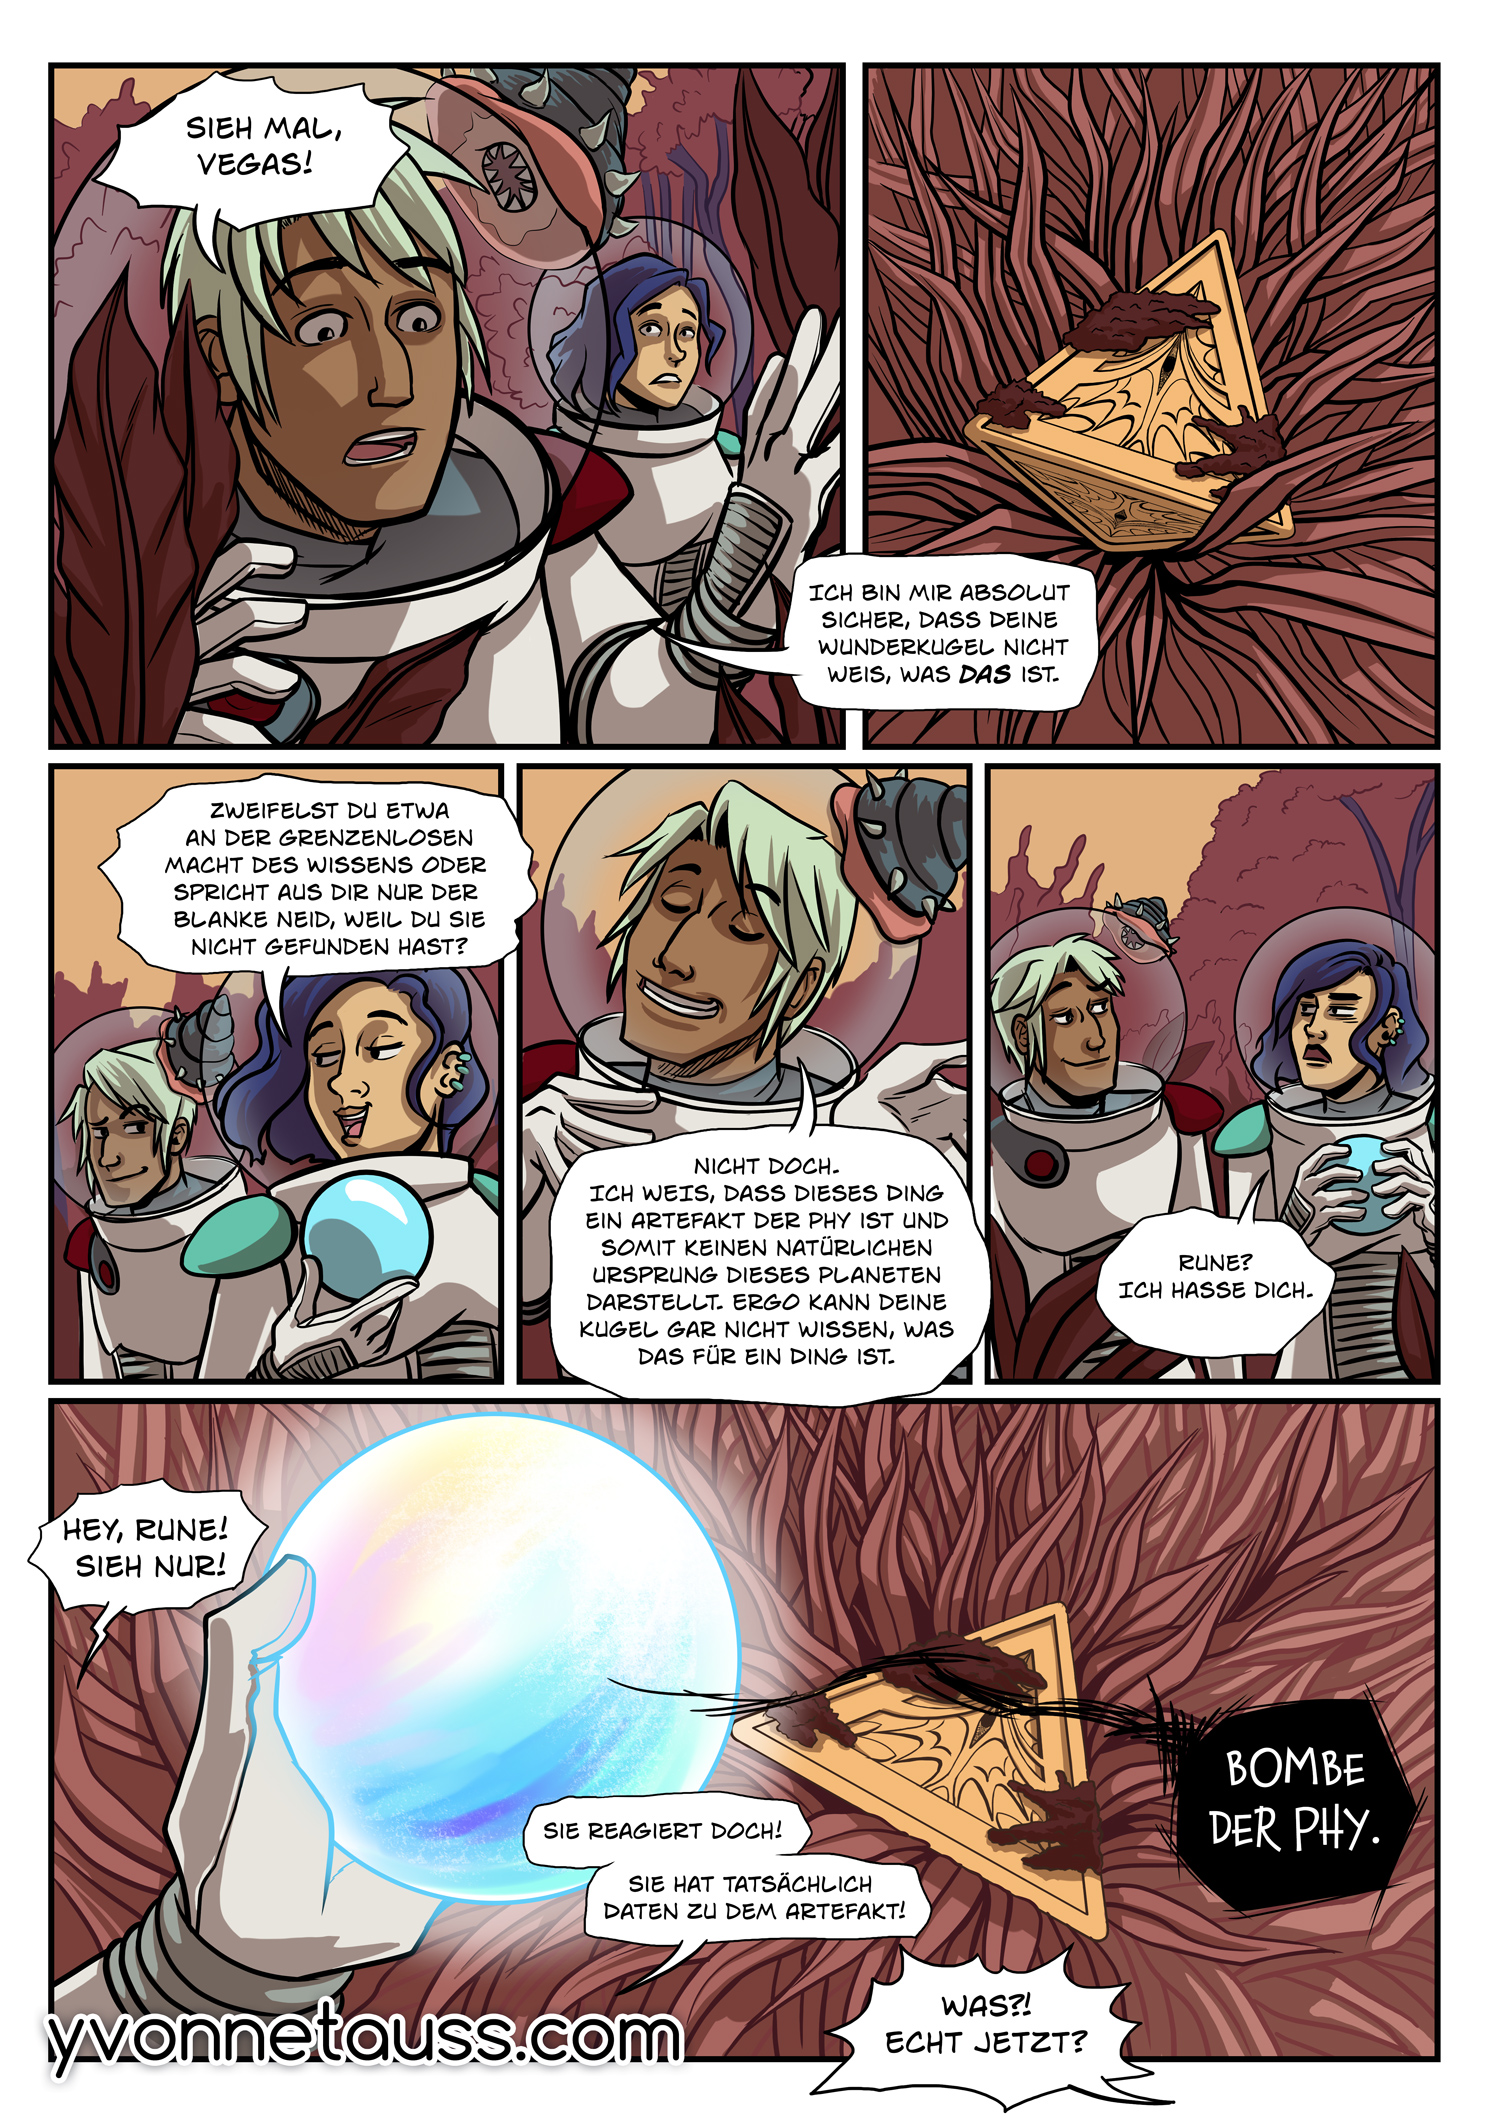 Seite 2 des Space Test-Comics.